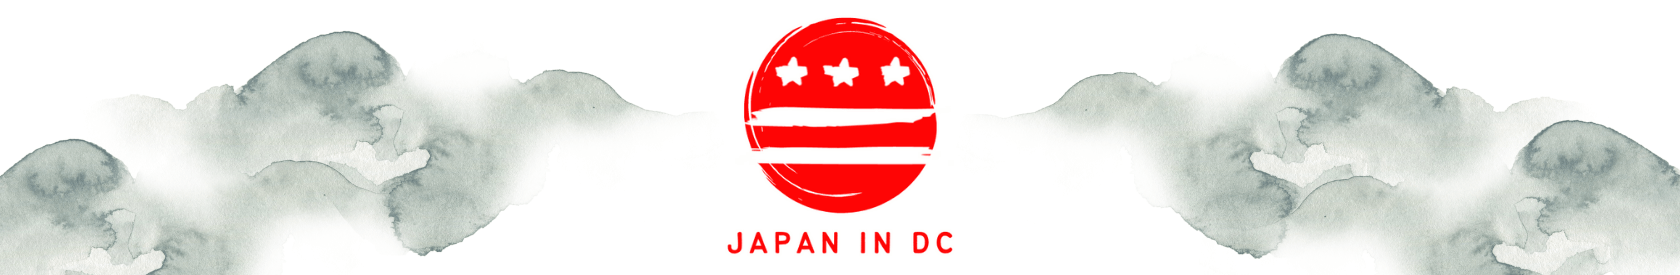 Japan in DC